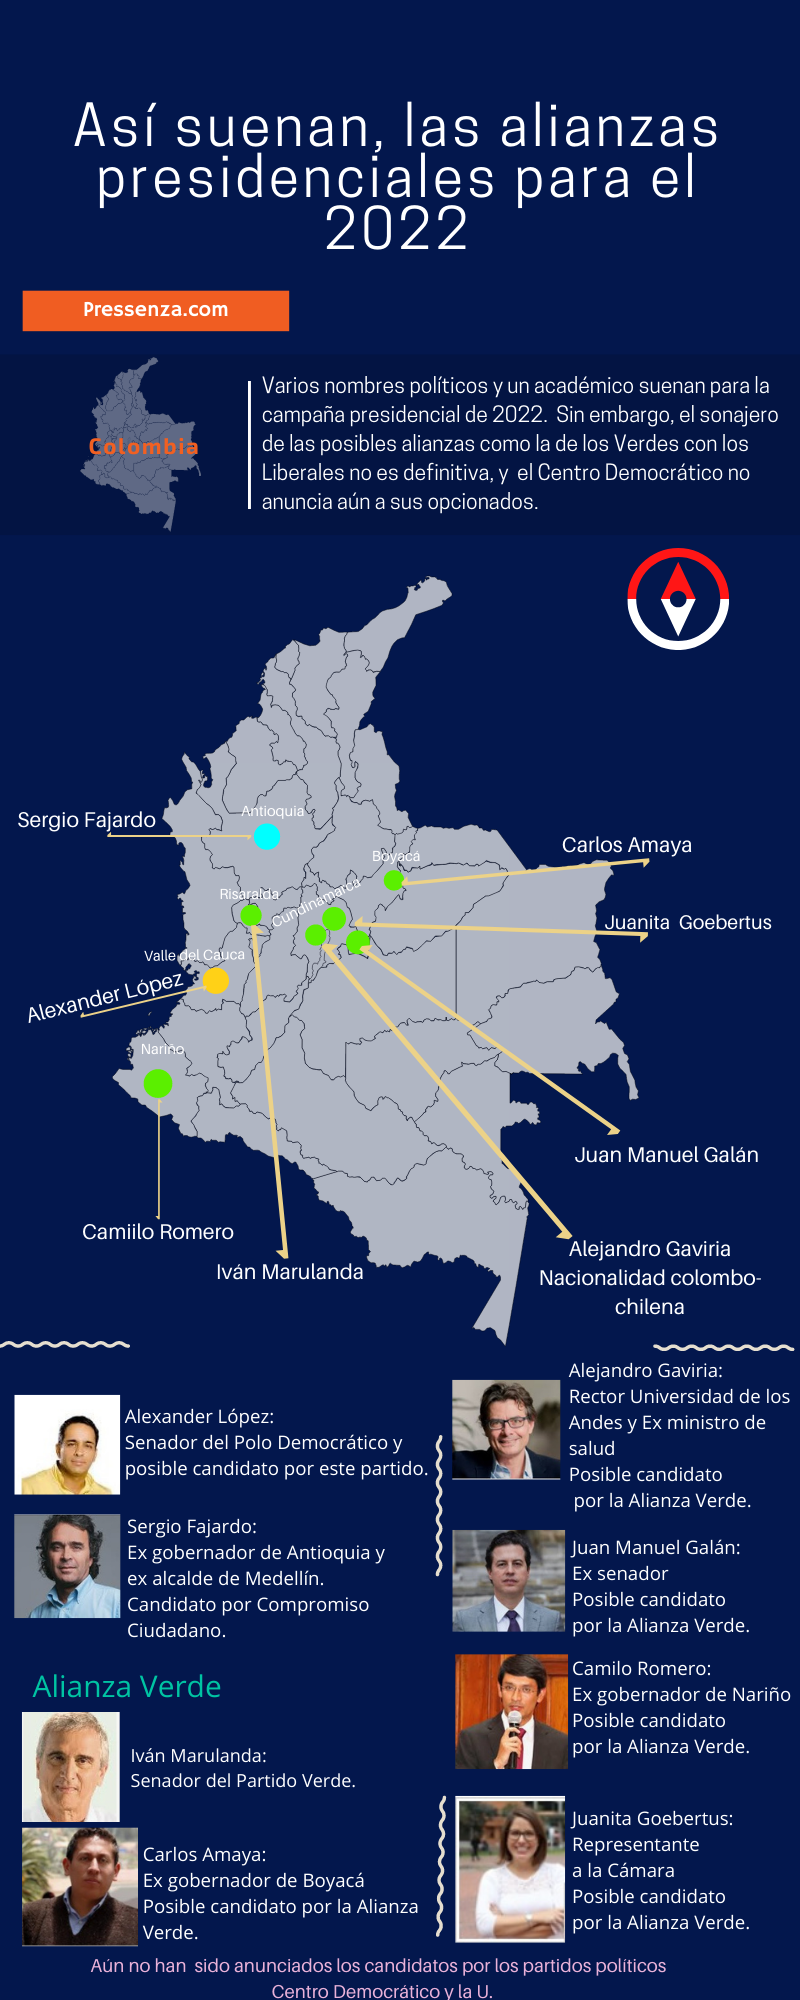 Alianzas presidenciales para el 2022 en Colombia